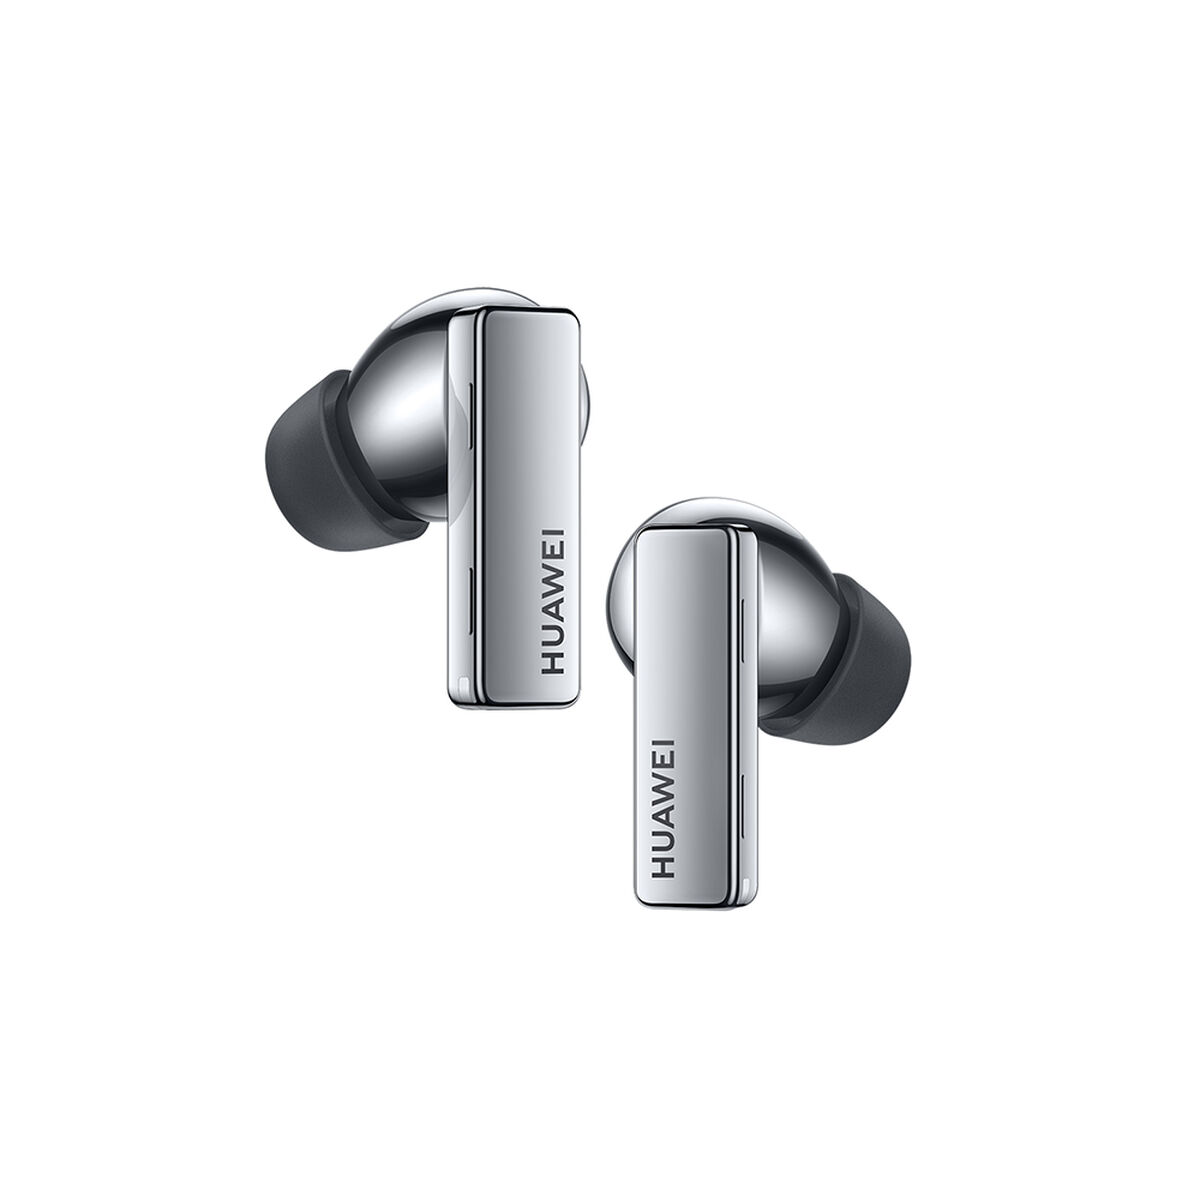  HUAWEI FreeBuds 4i - Auriculares inalámbricos Bluetooth  intrauditivos con batería de larga duración, cómoda cancelación activa de  ruido, carga rápida, sonido nítido de doble micrófono